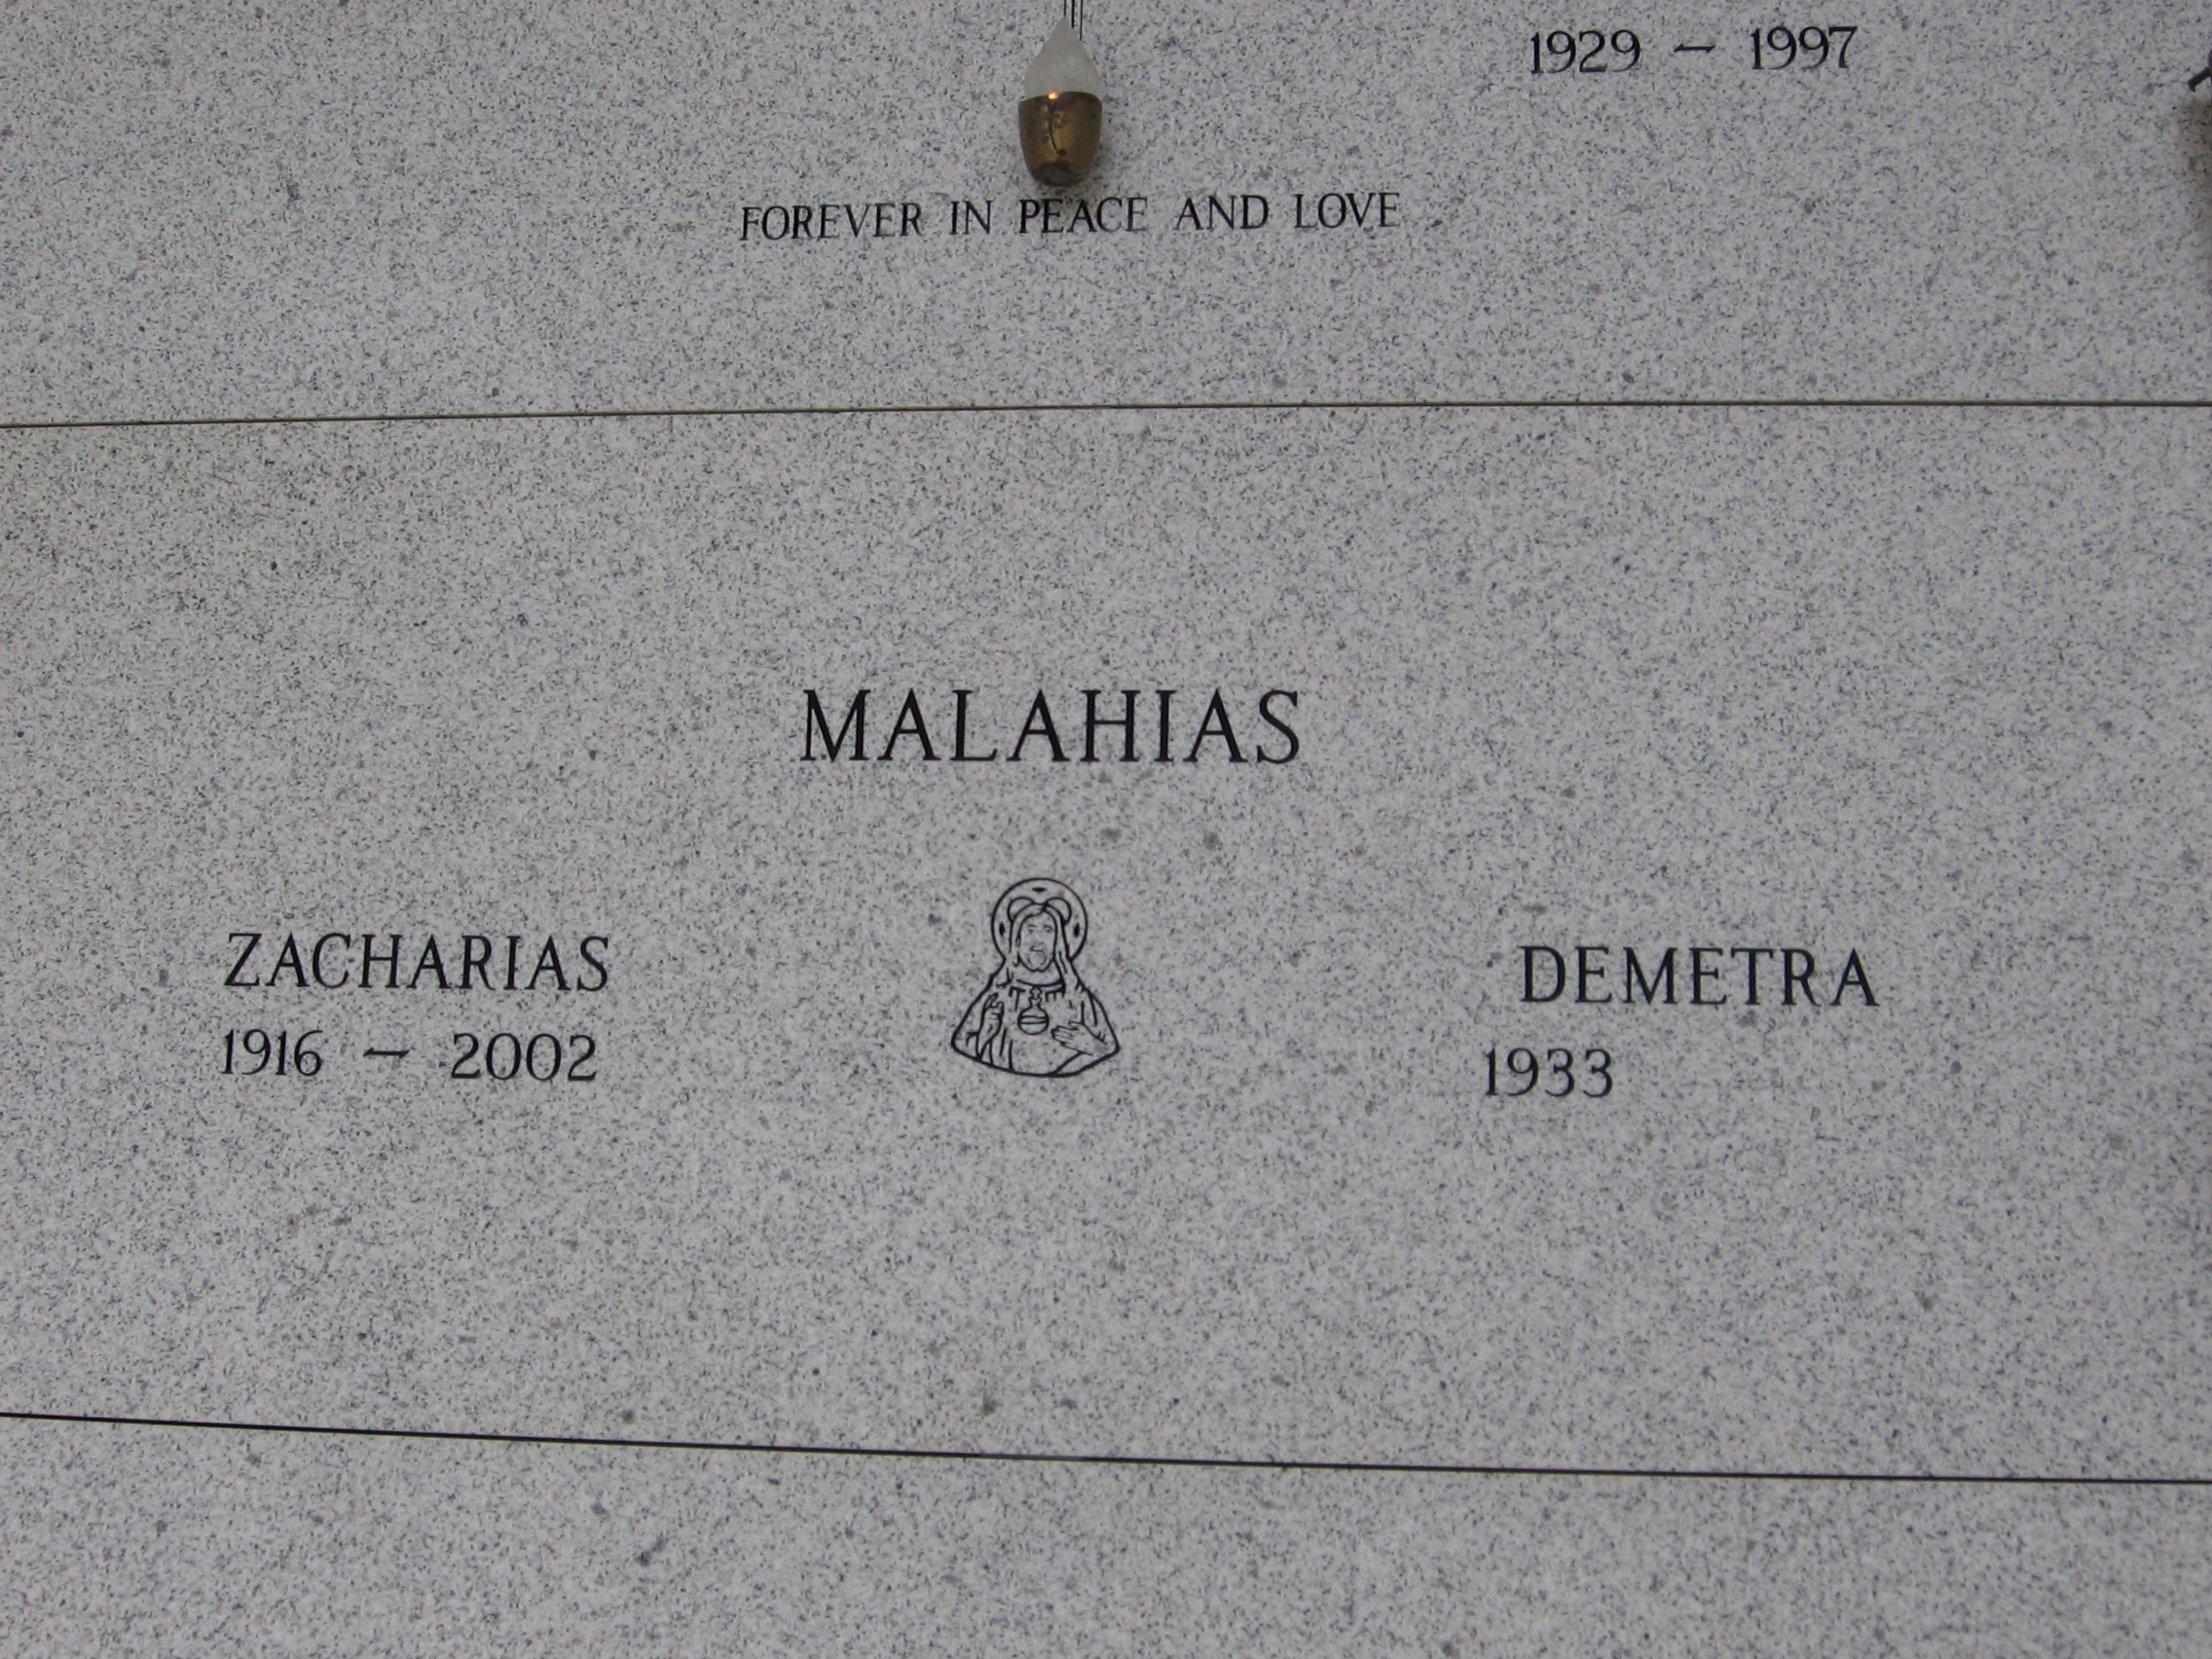 Zacharias Malahias